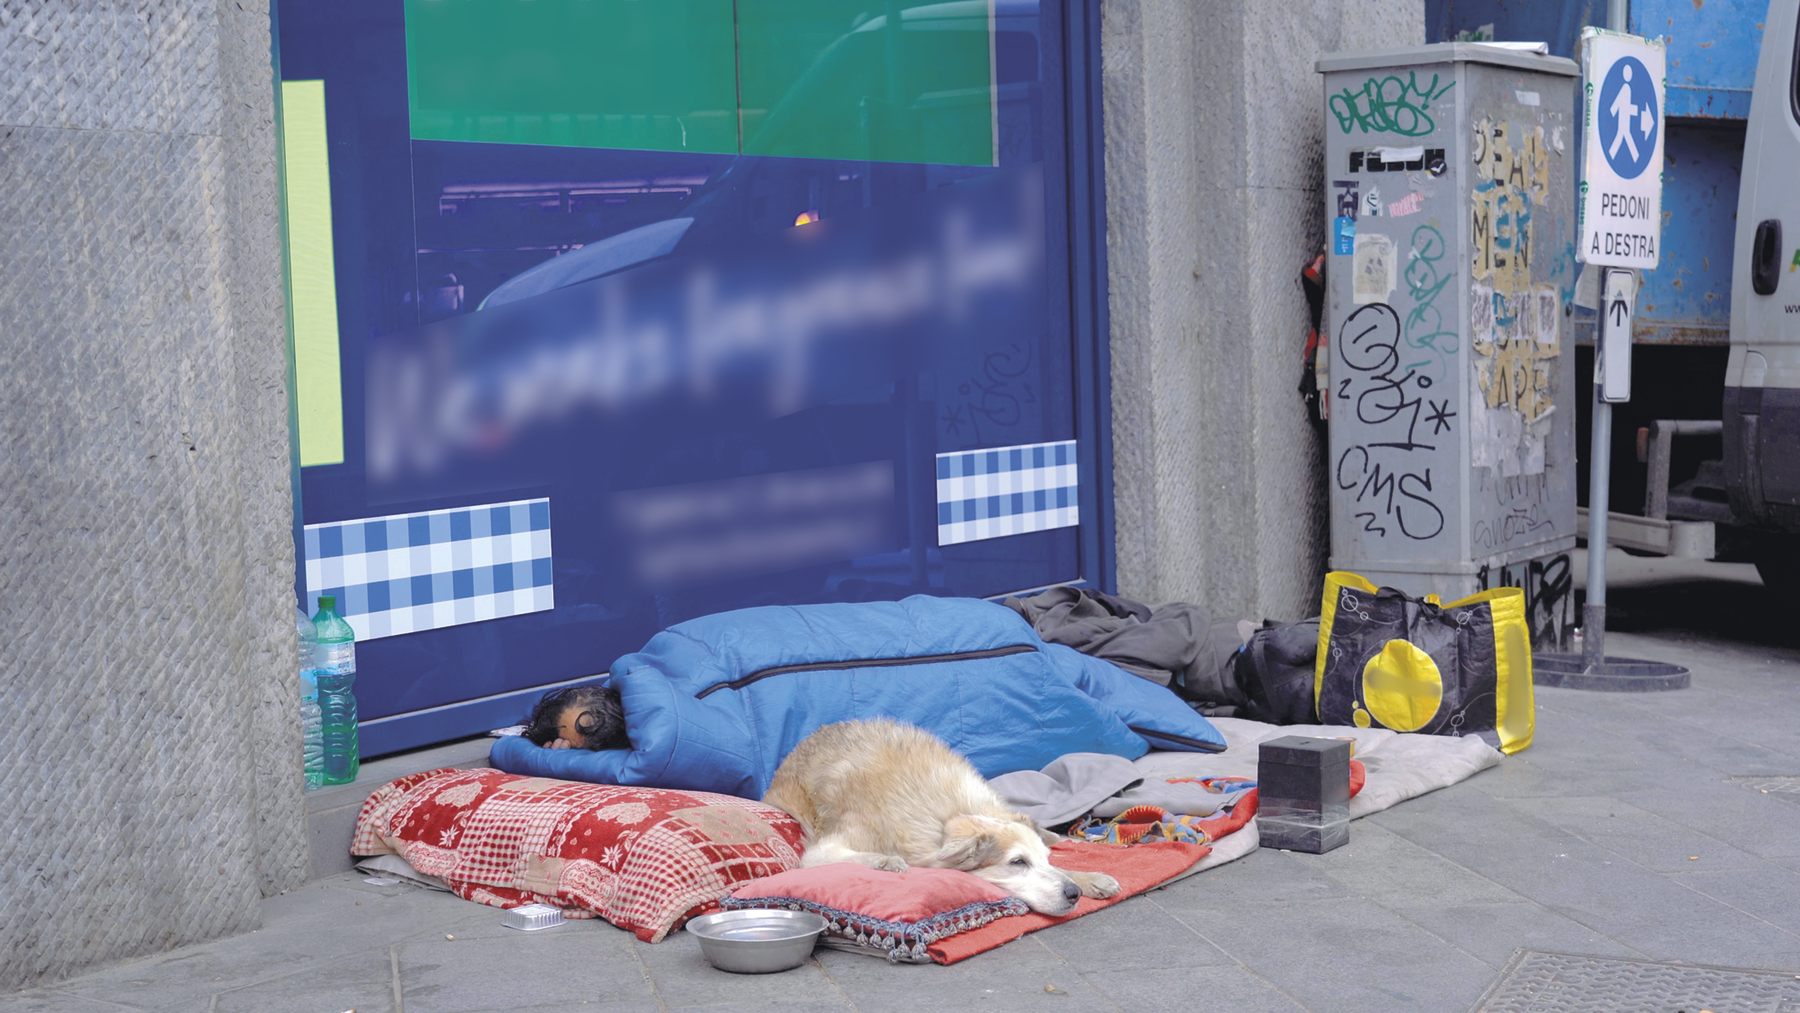 Fotografia. Uma pessoa dormindo em uma calçada. Há um cachorro, bolsas e uma garrafa de água ao lado dela.